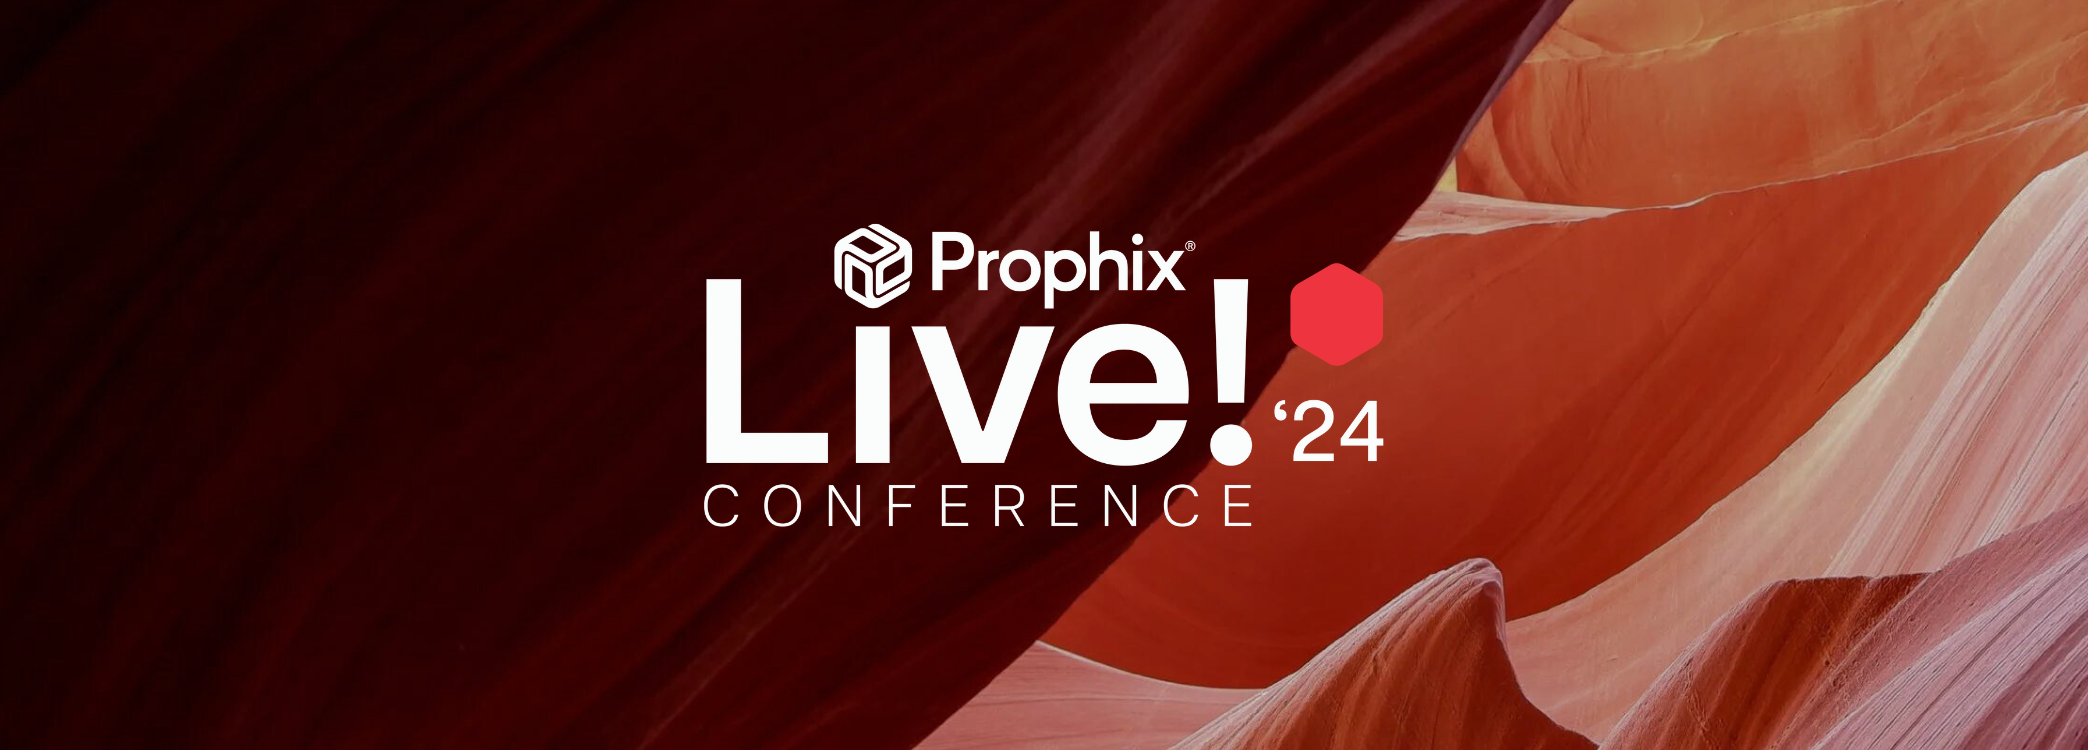 Prophix Live 24